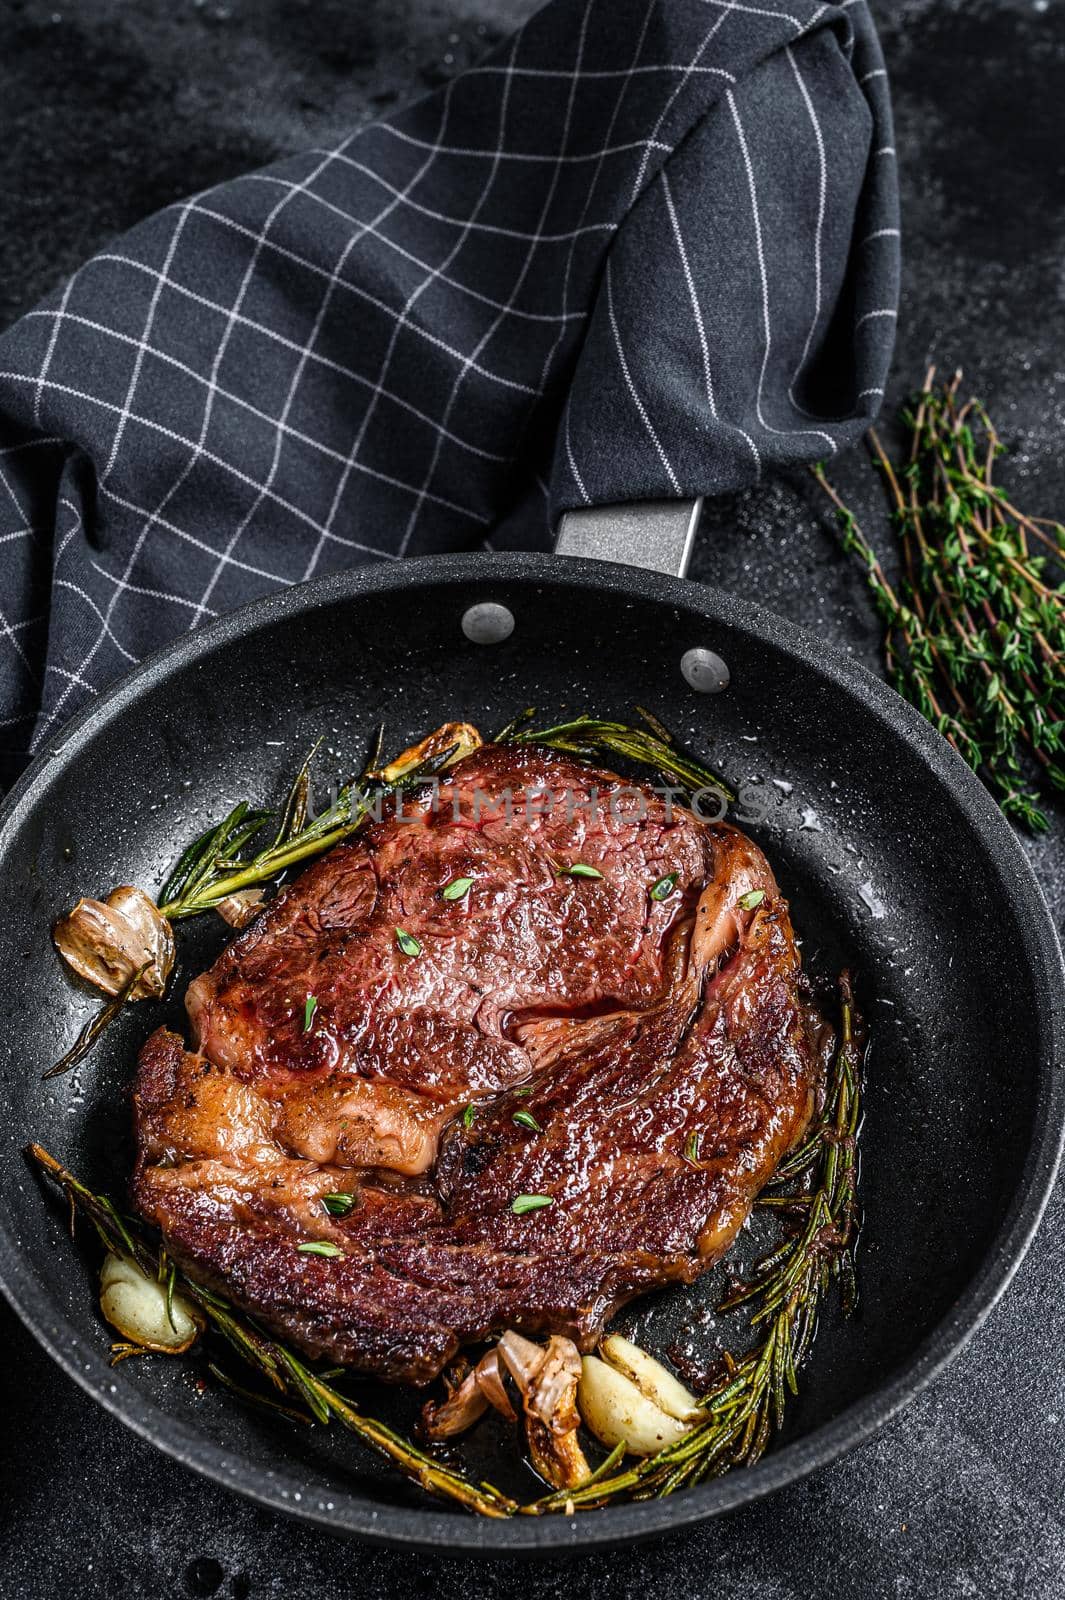 Roasted rib eye steak, ribeye beef meat in a pan. Black background. Top view.